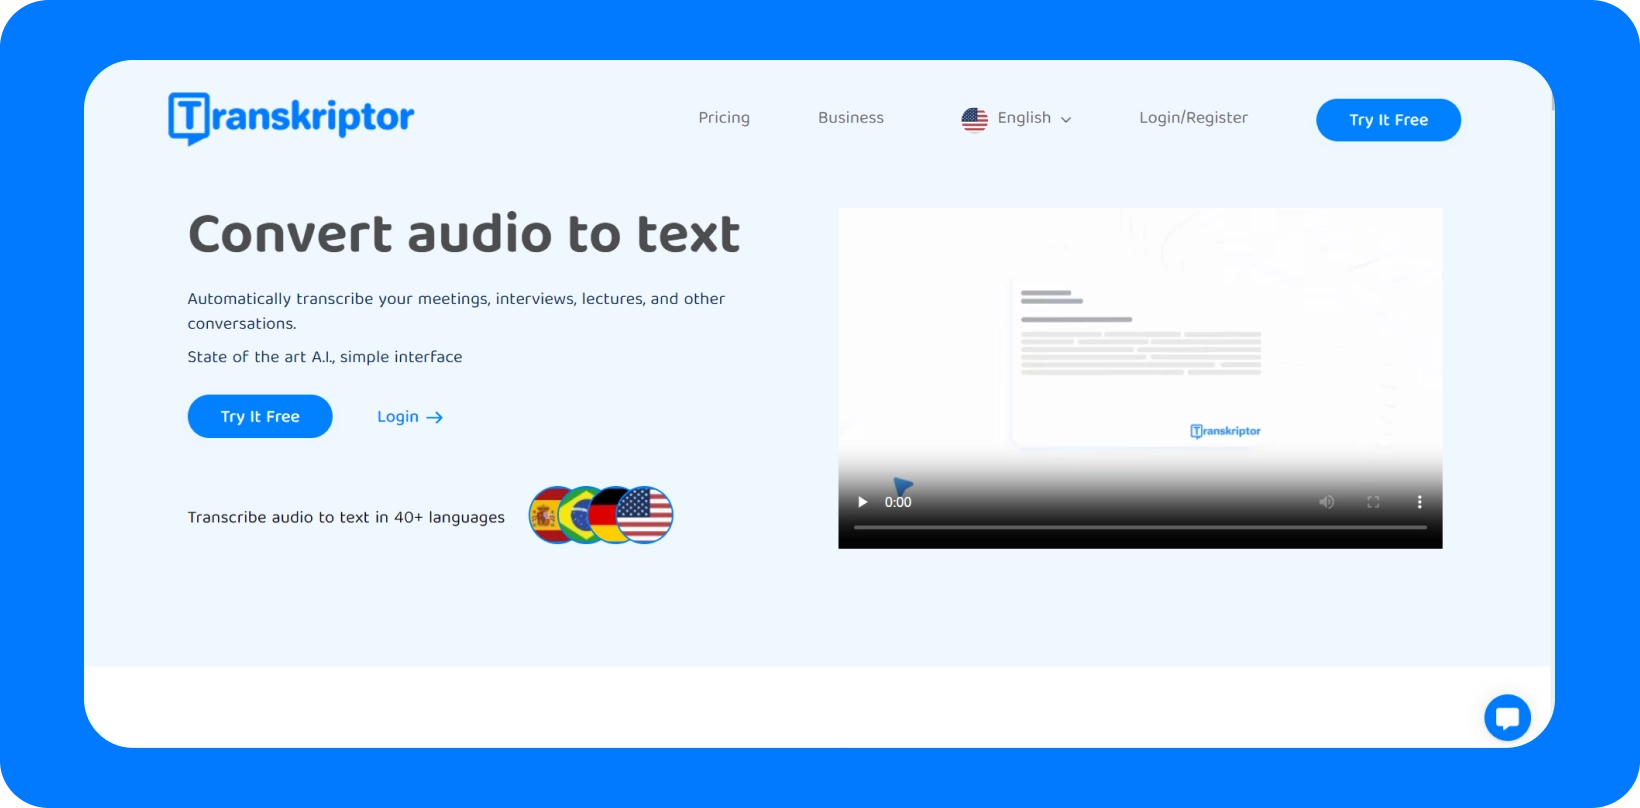 Transkriptor इंटरफ़ेस बहु-भाषा समर्थन के साथ 'ऑडियो को टेक्स्ट में कनवर्ट करें' सेवा प्रदर्शित करता है।